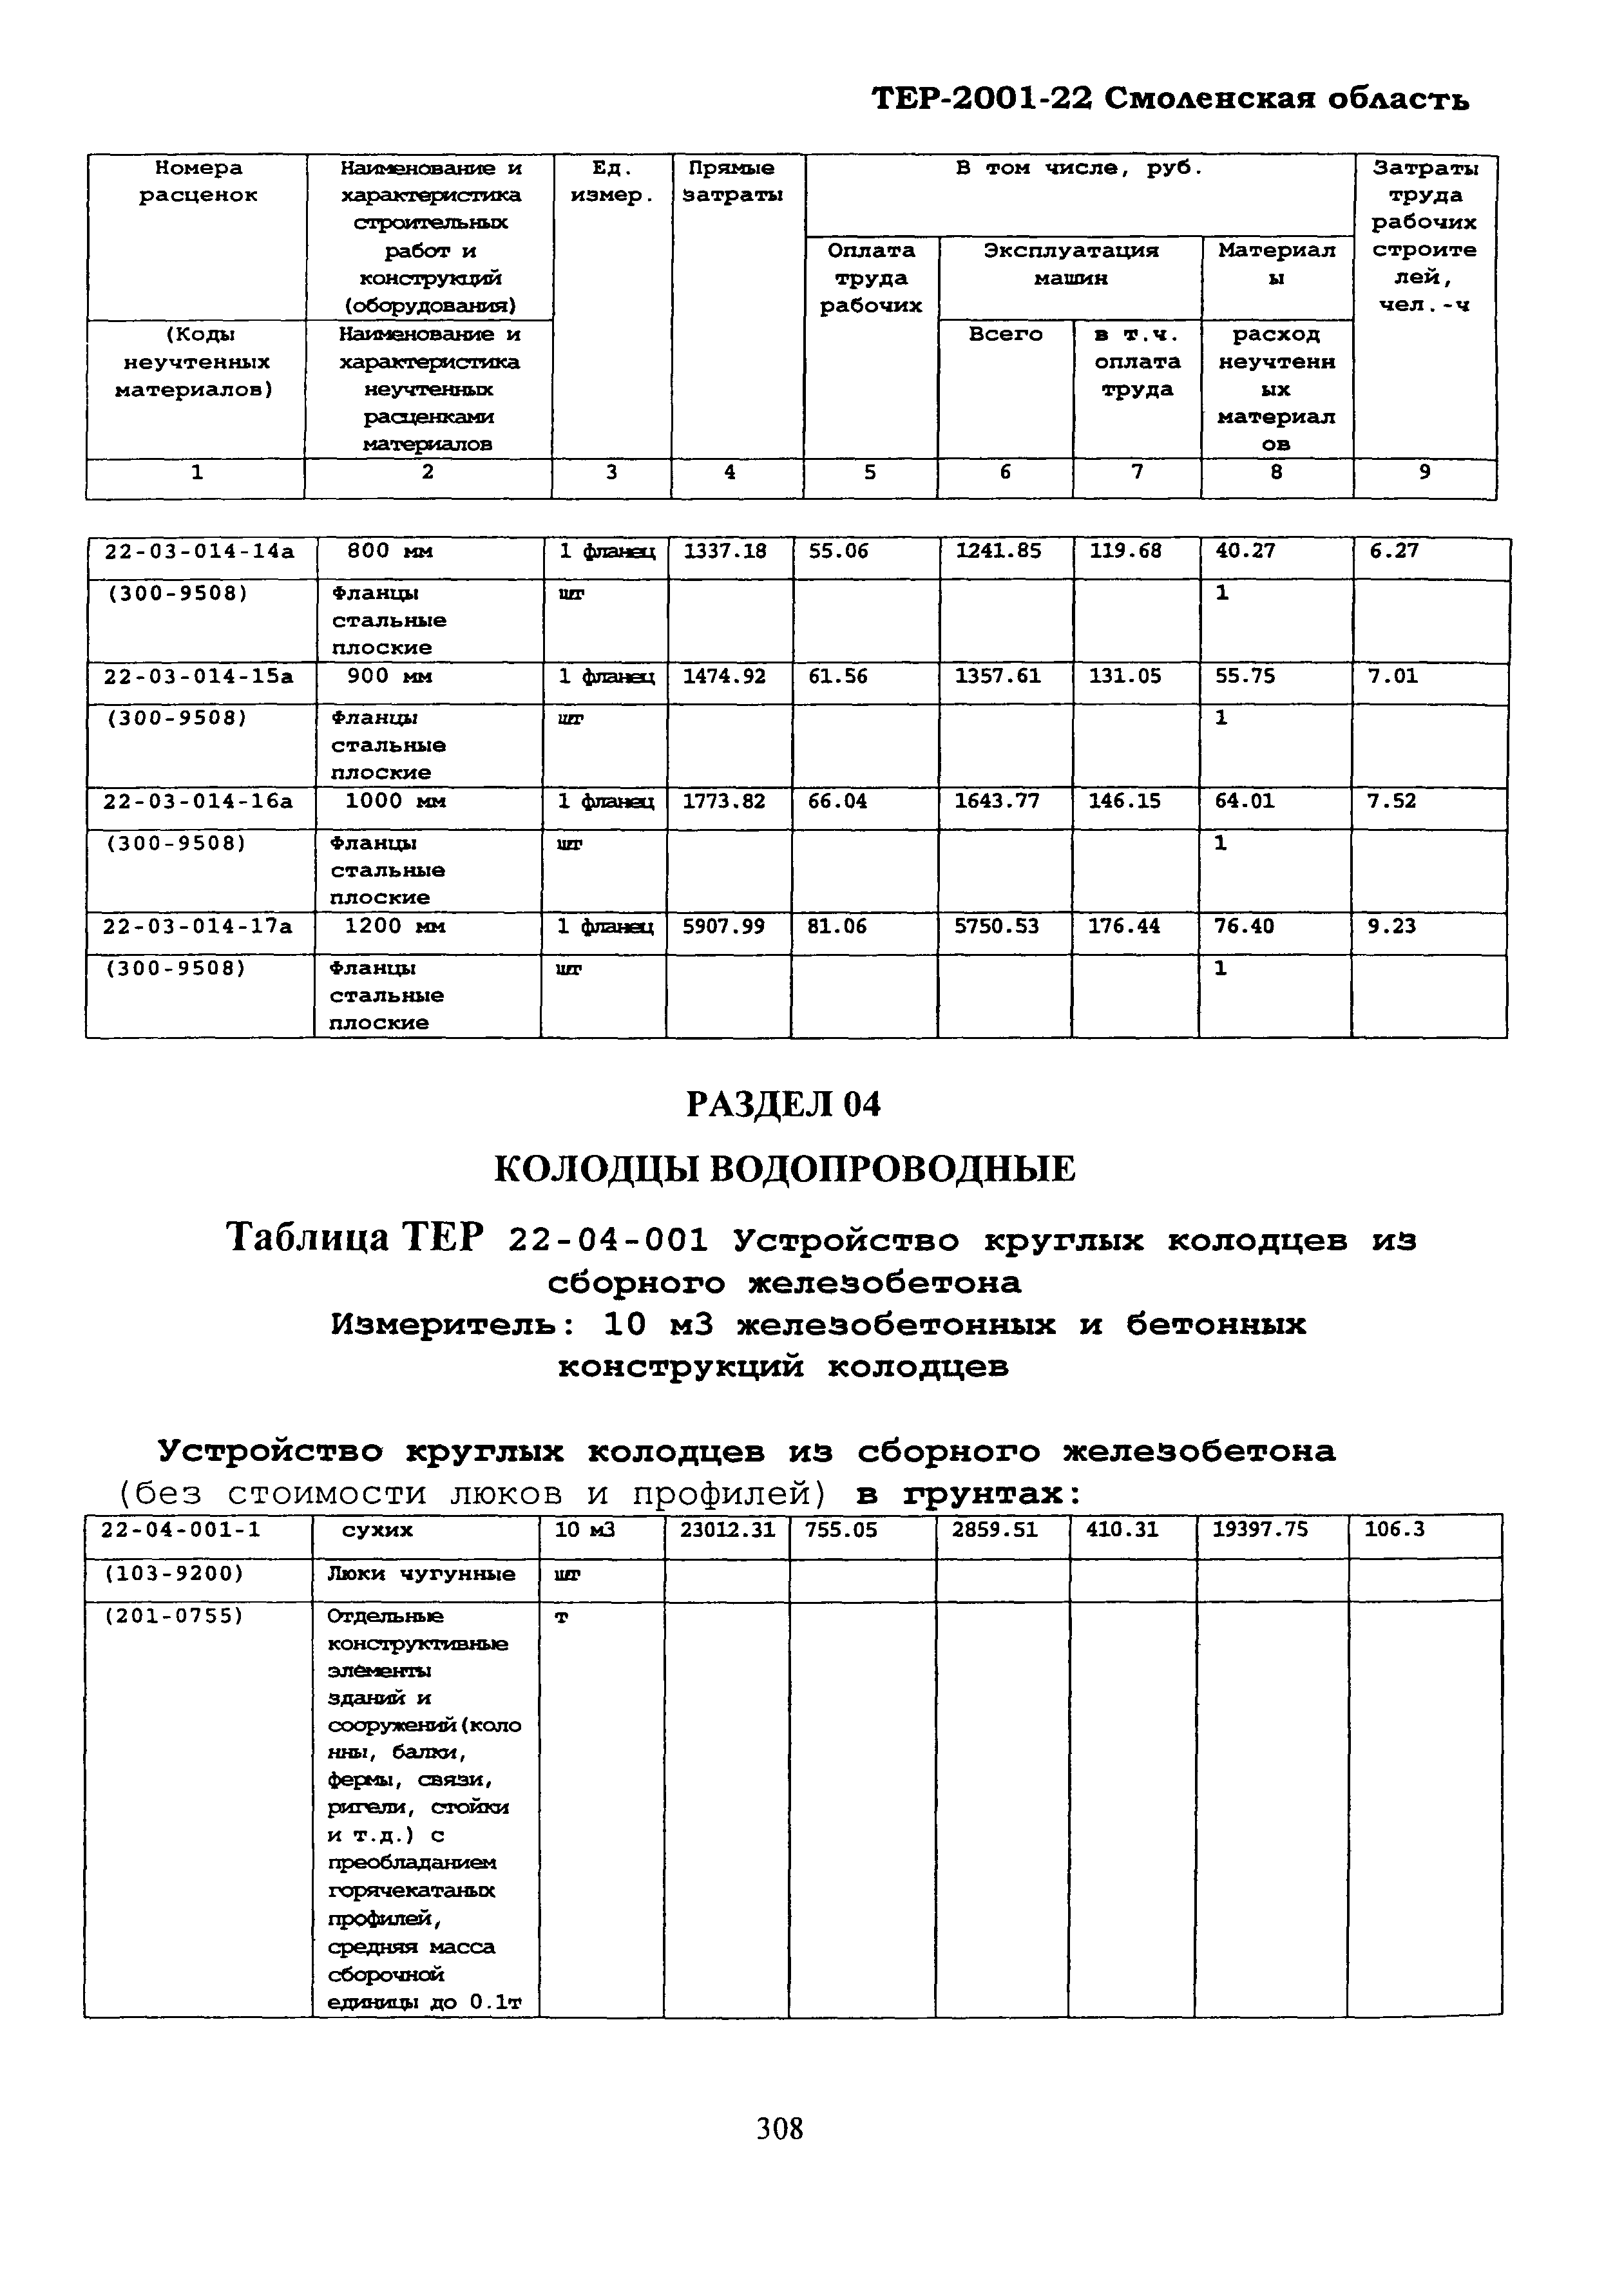 ТЕР Смоленской обл. 2001-22